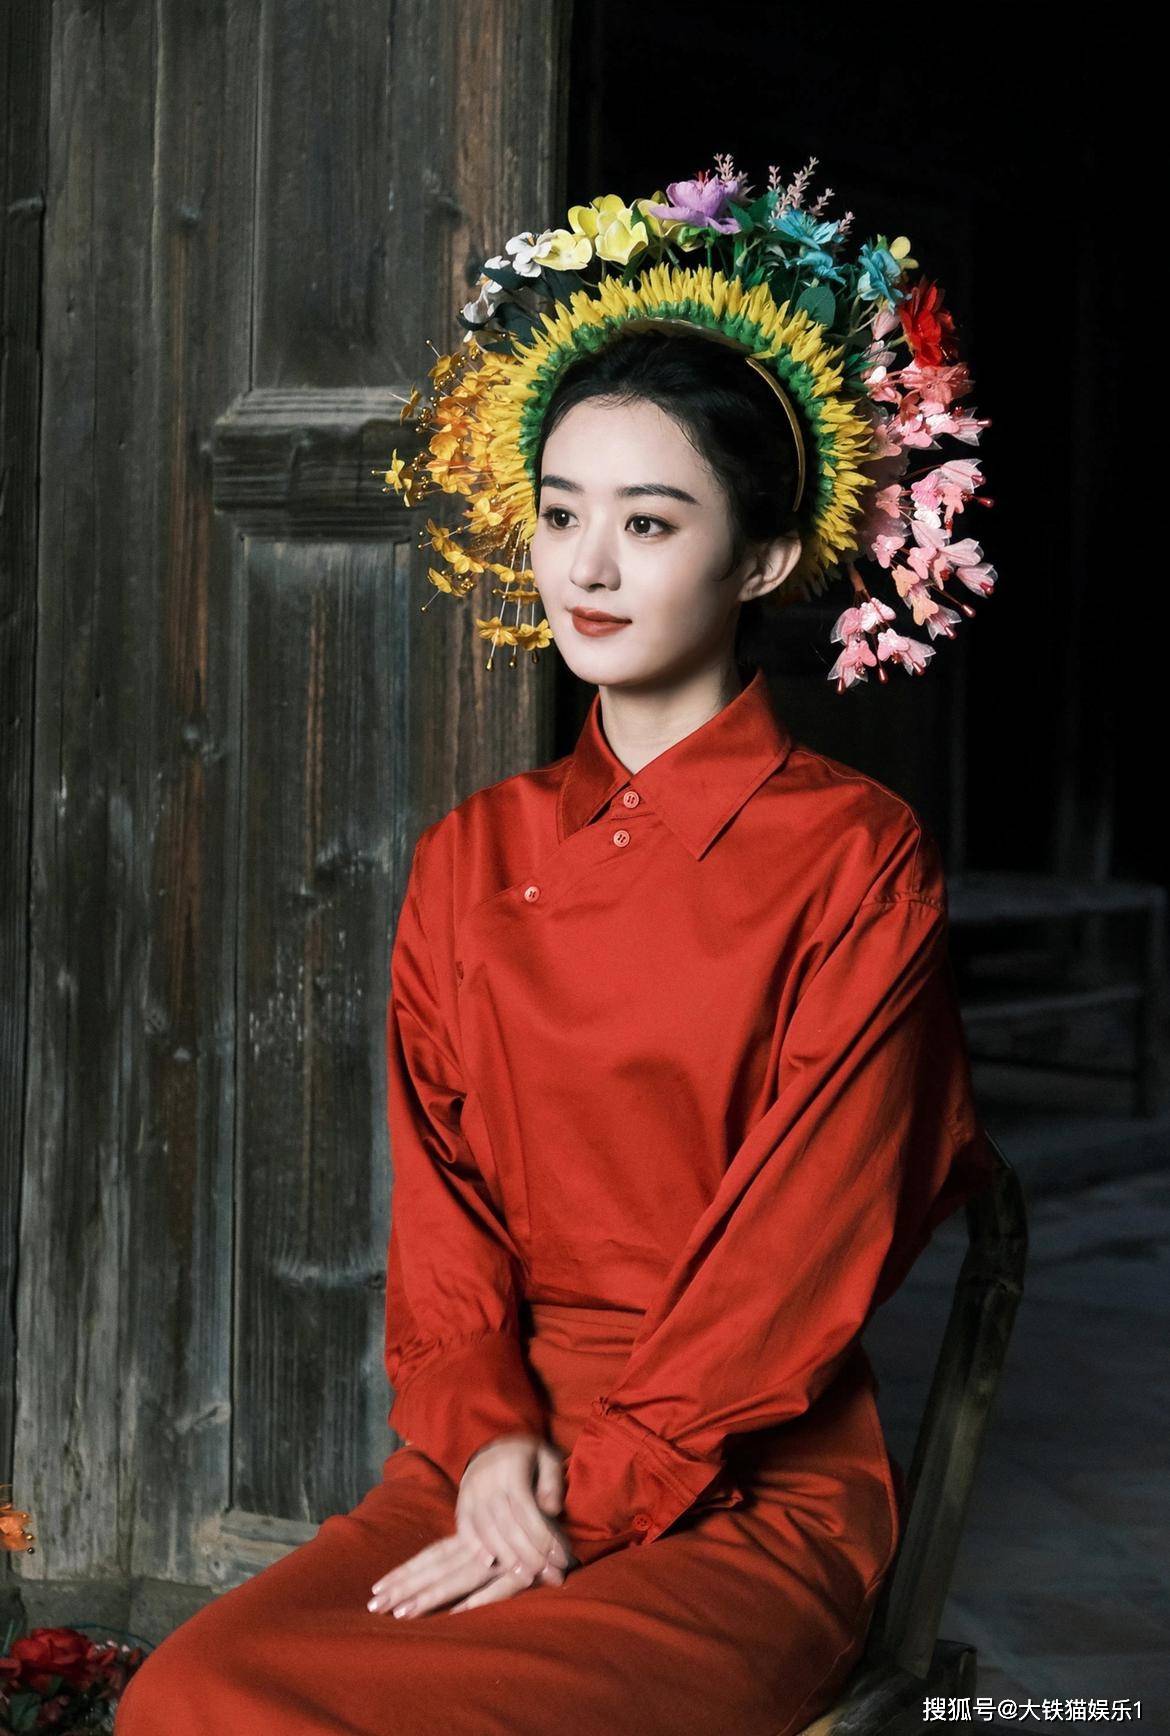 年初赵丽颖拍摄《上城士》杂志时首尝簪花,她一袭红衣,身姿纤细,色彩